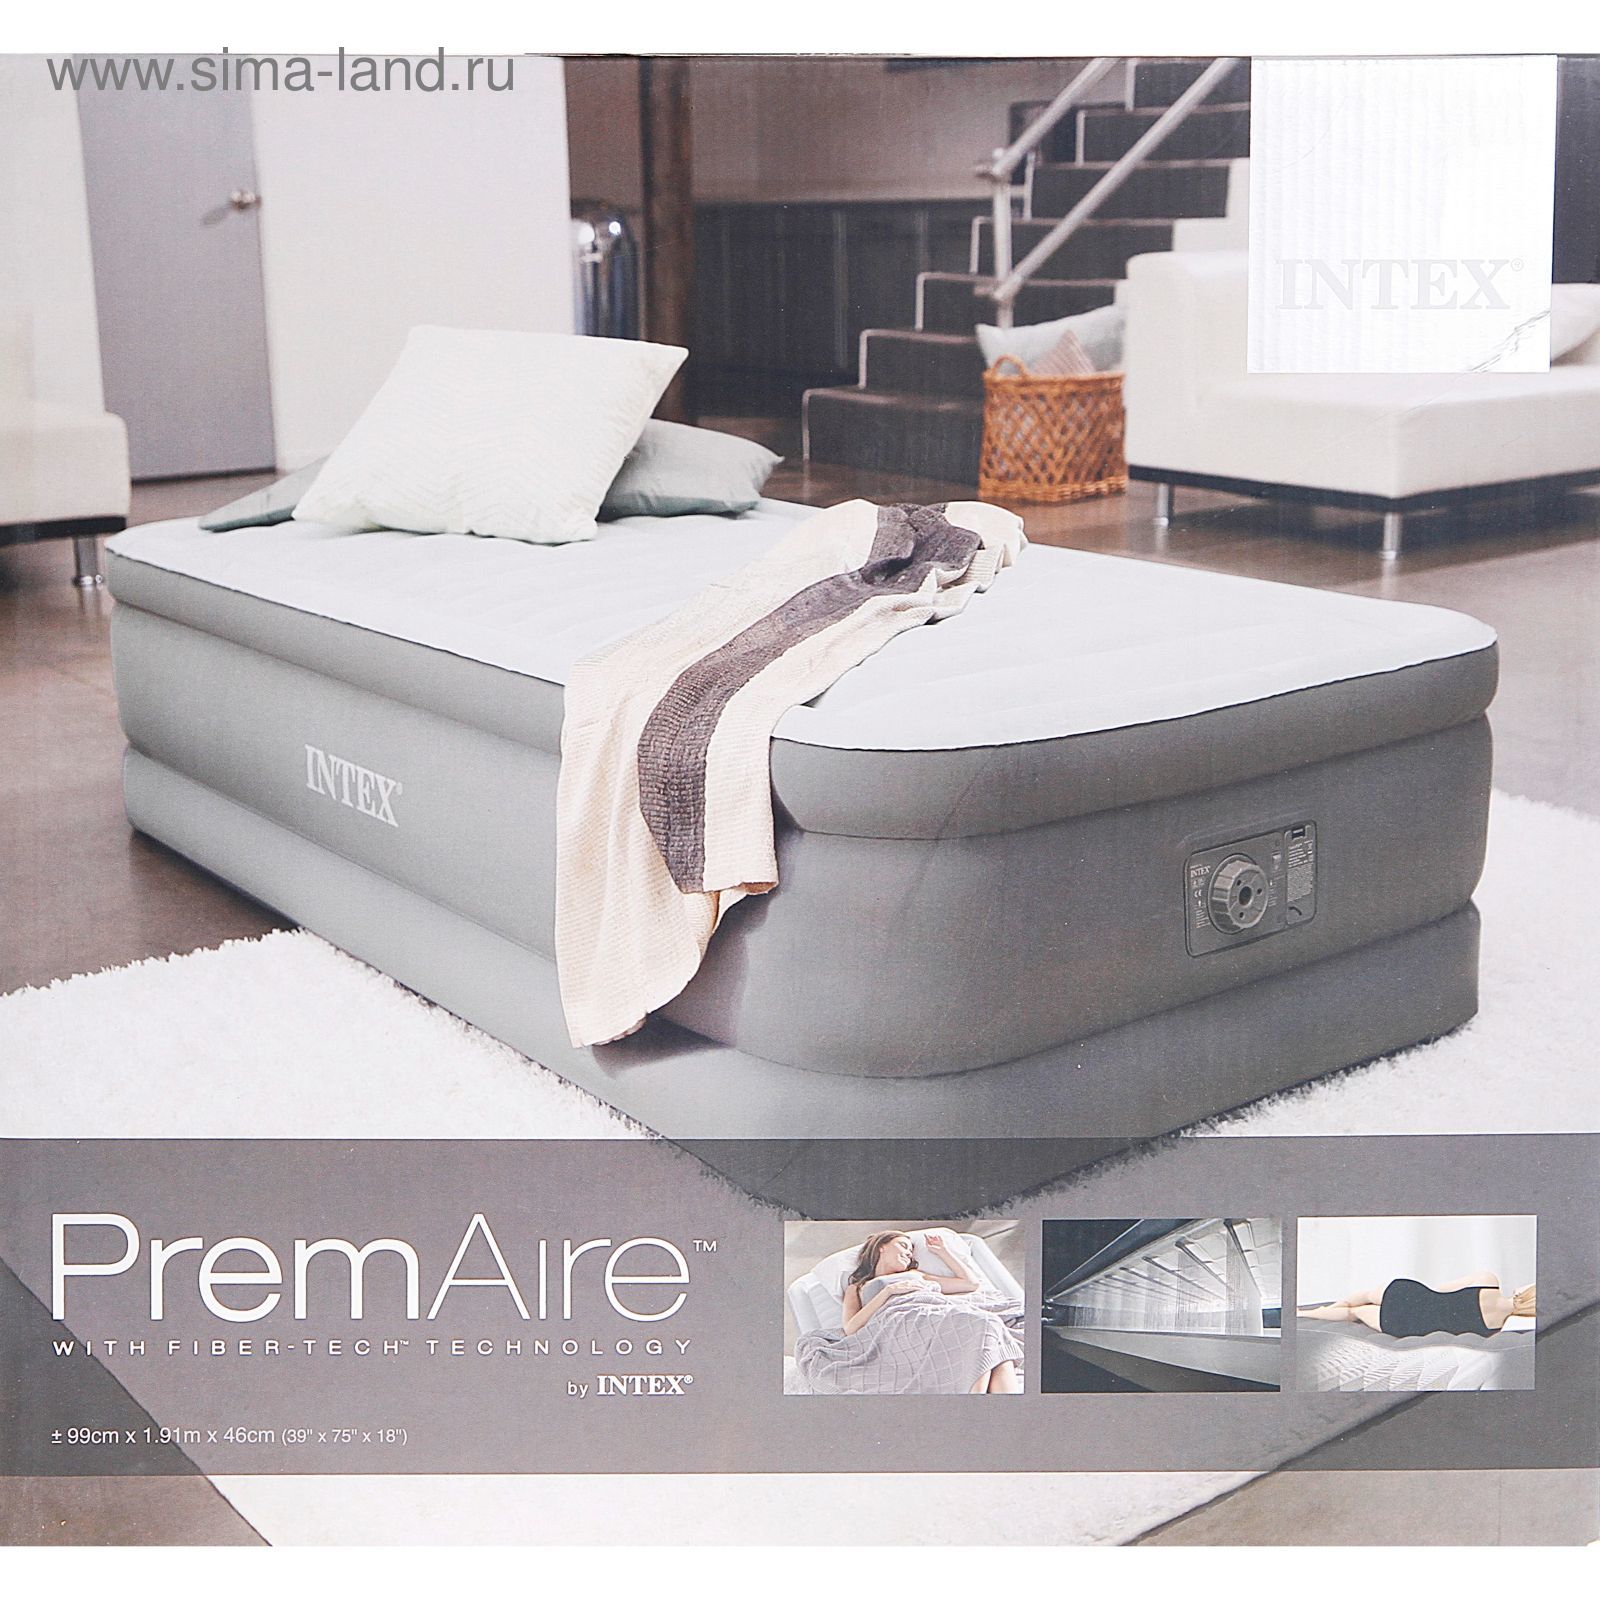 Кровать надувная PremAire Twin с встроенным насосом 220V, 99х191х46 см INTEX